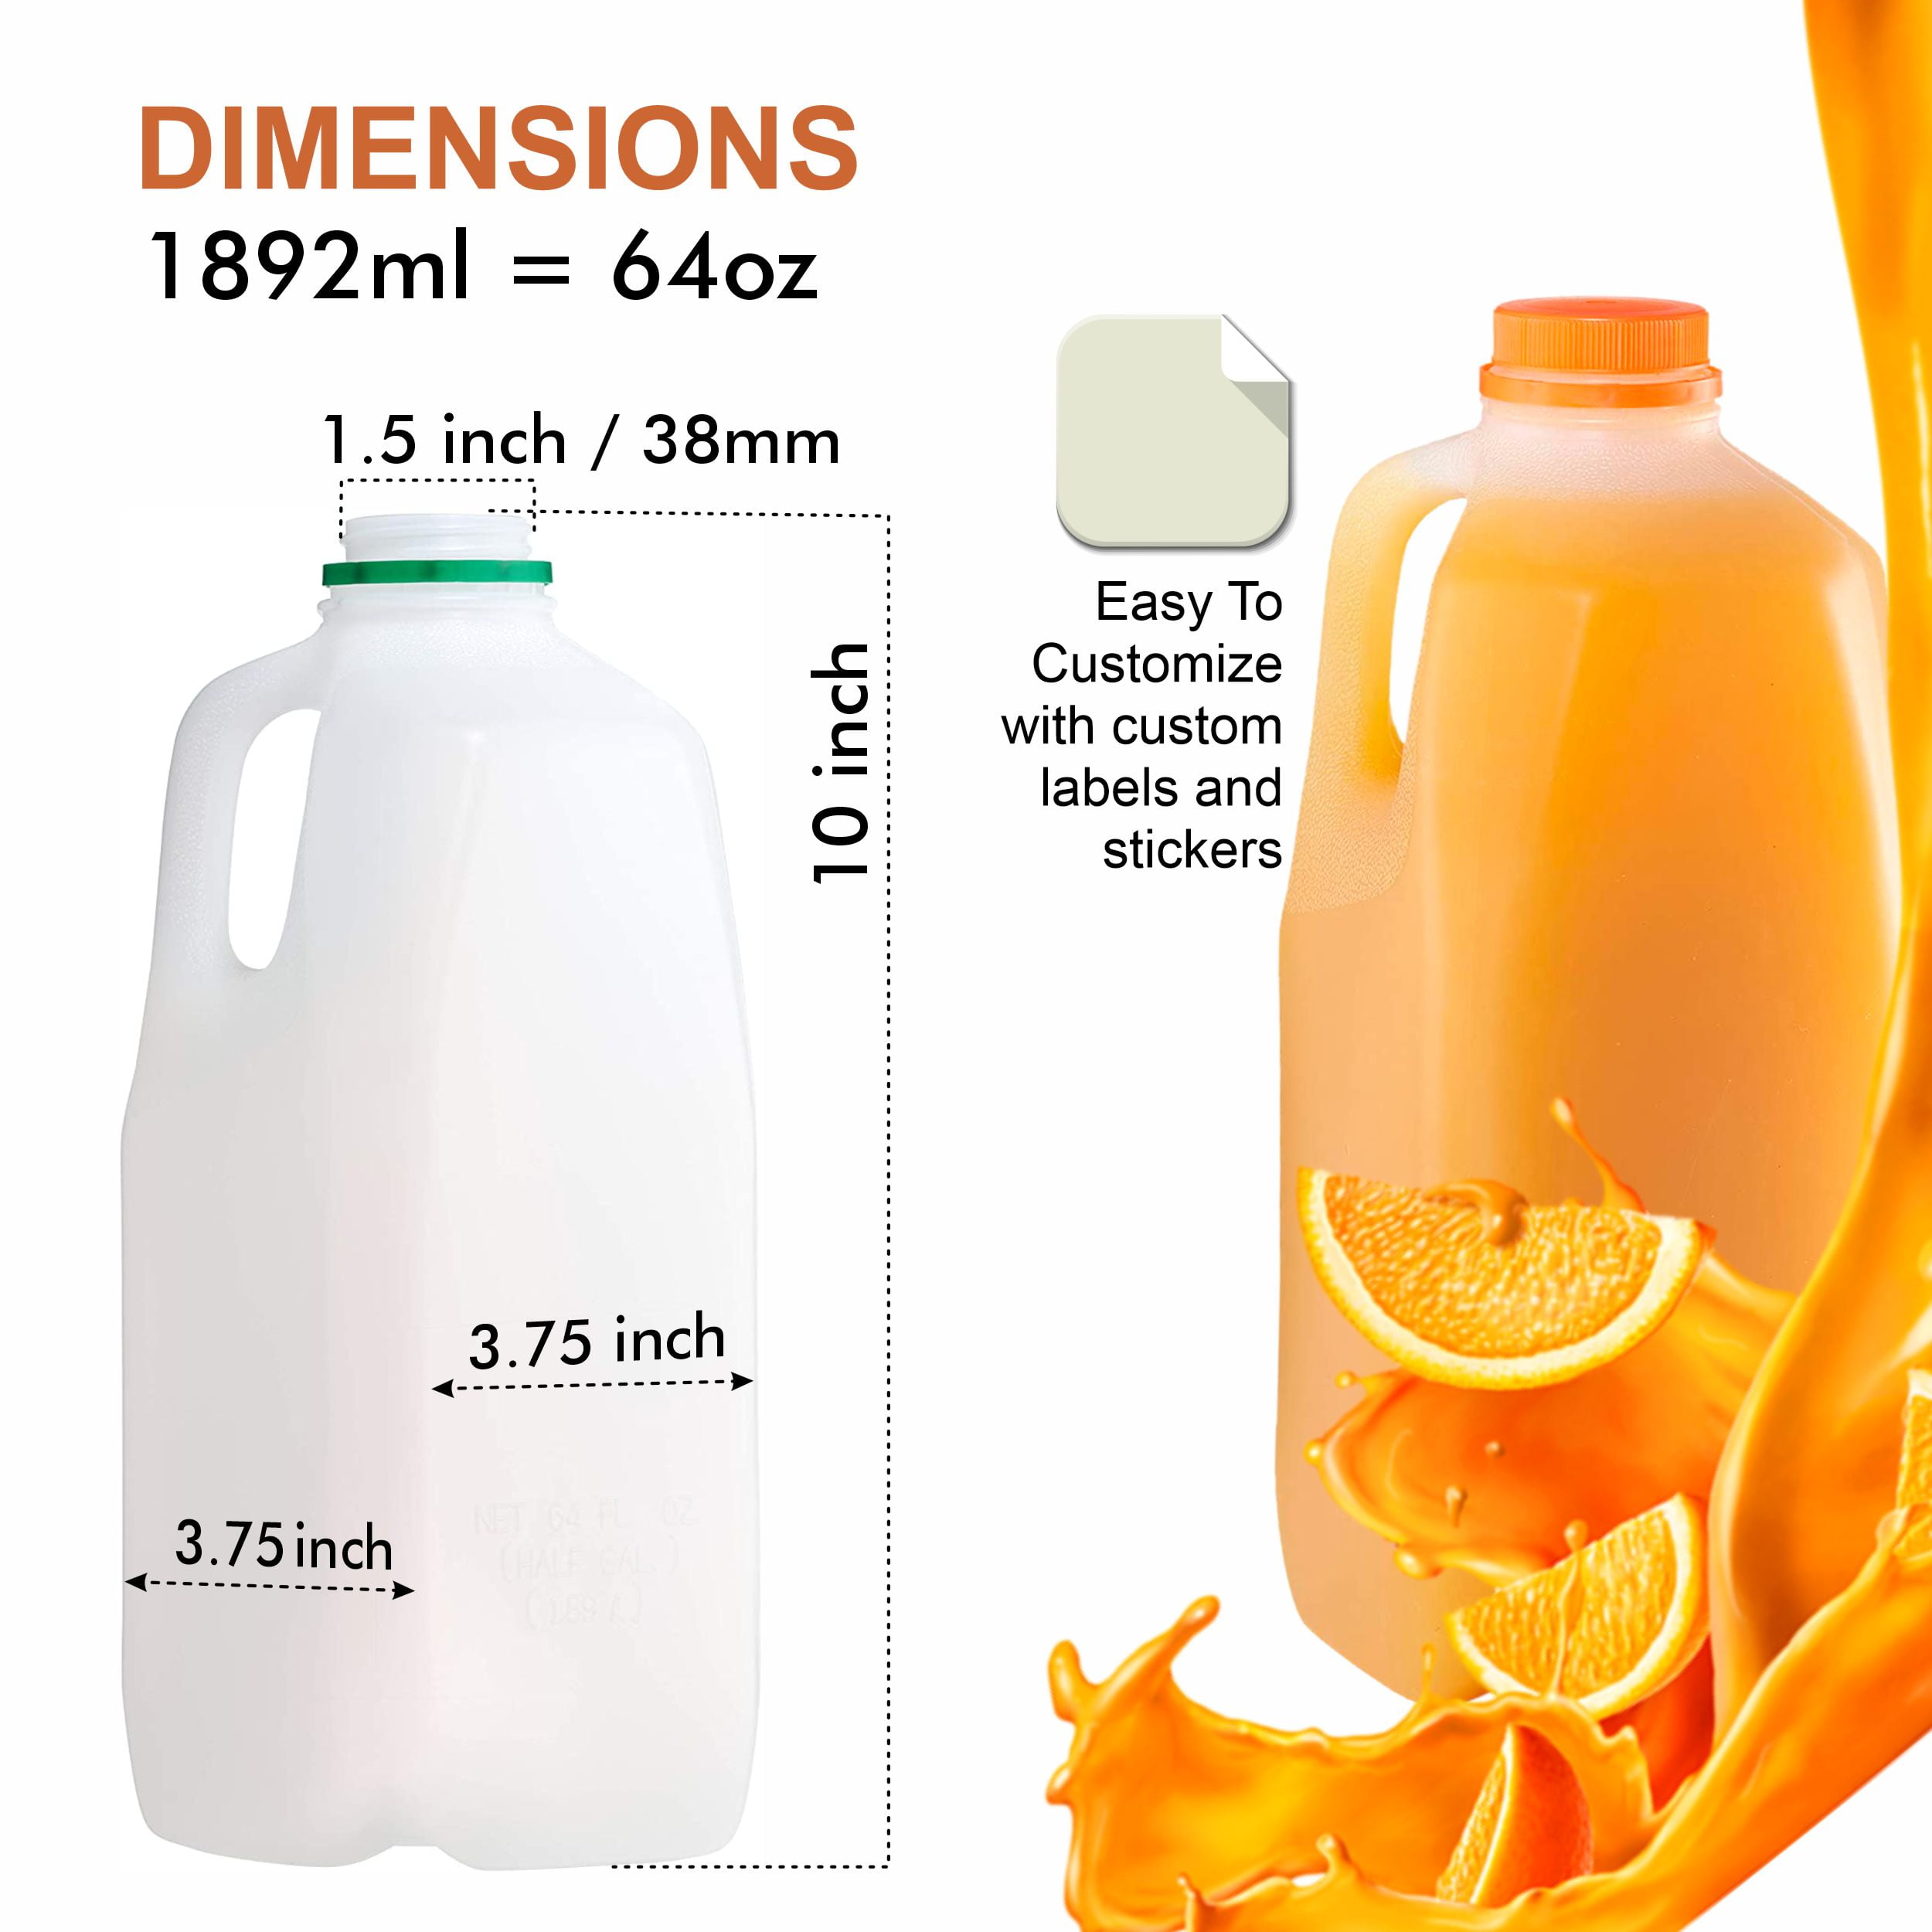 64 oz Clear Plastic Juice Bottle - 4 1/8L x 4 1/8W x 10 1/2H